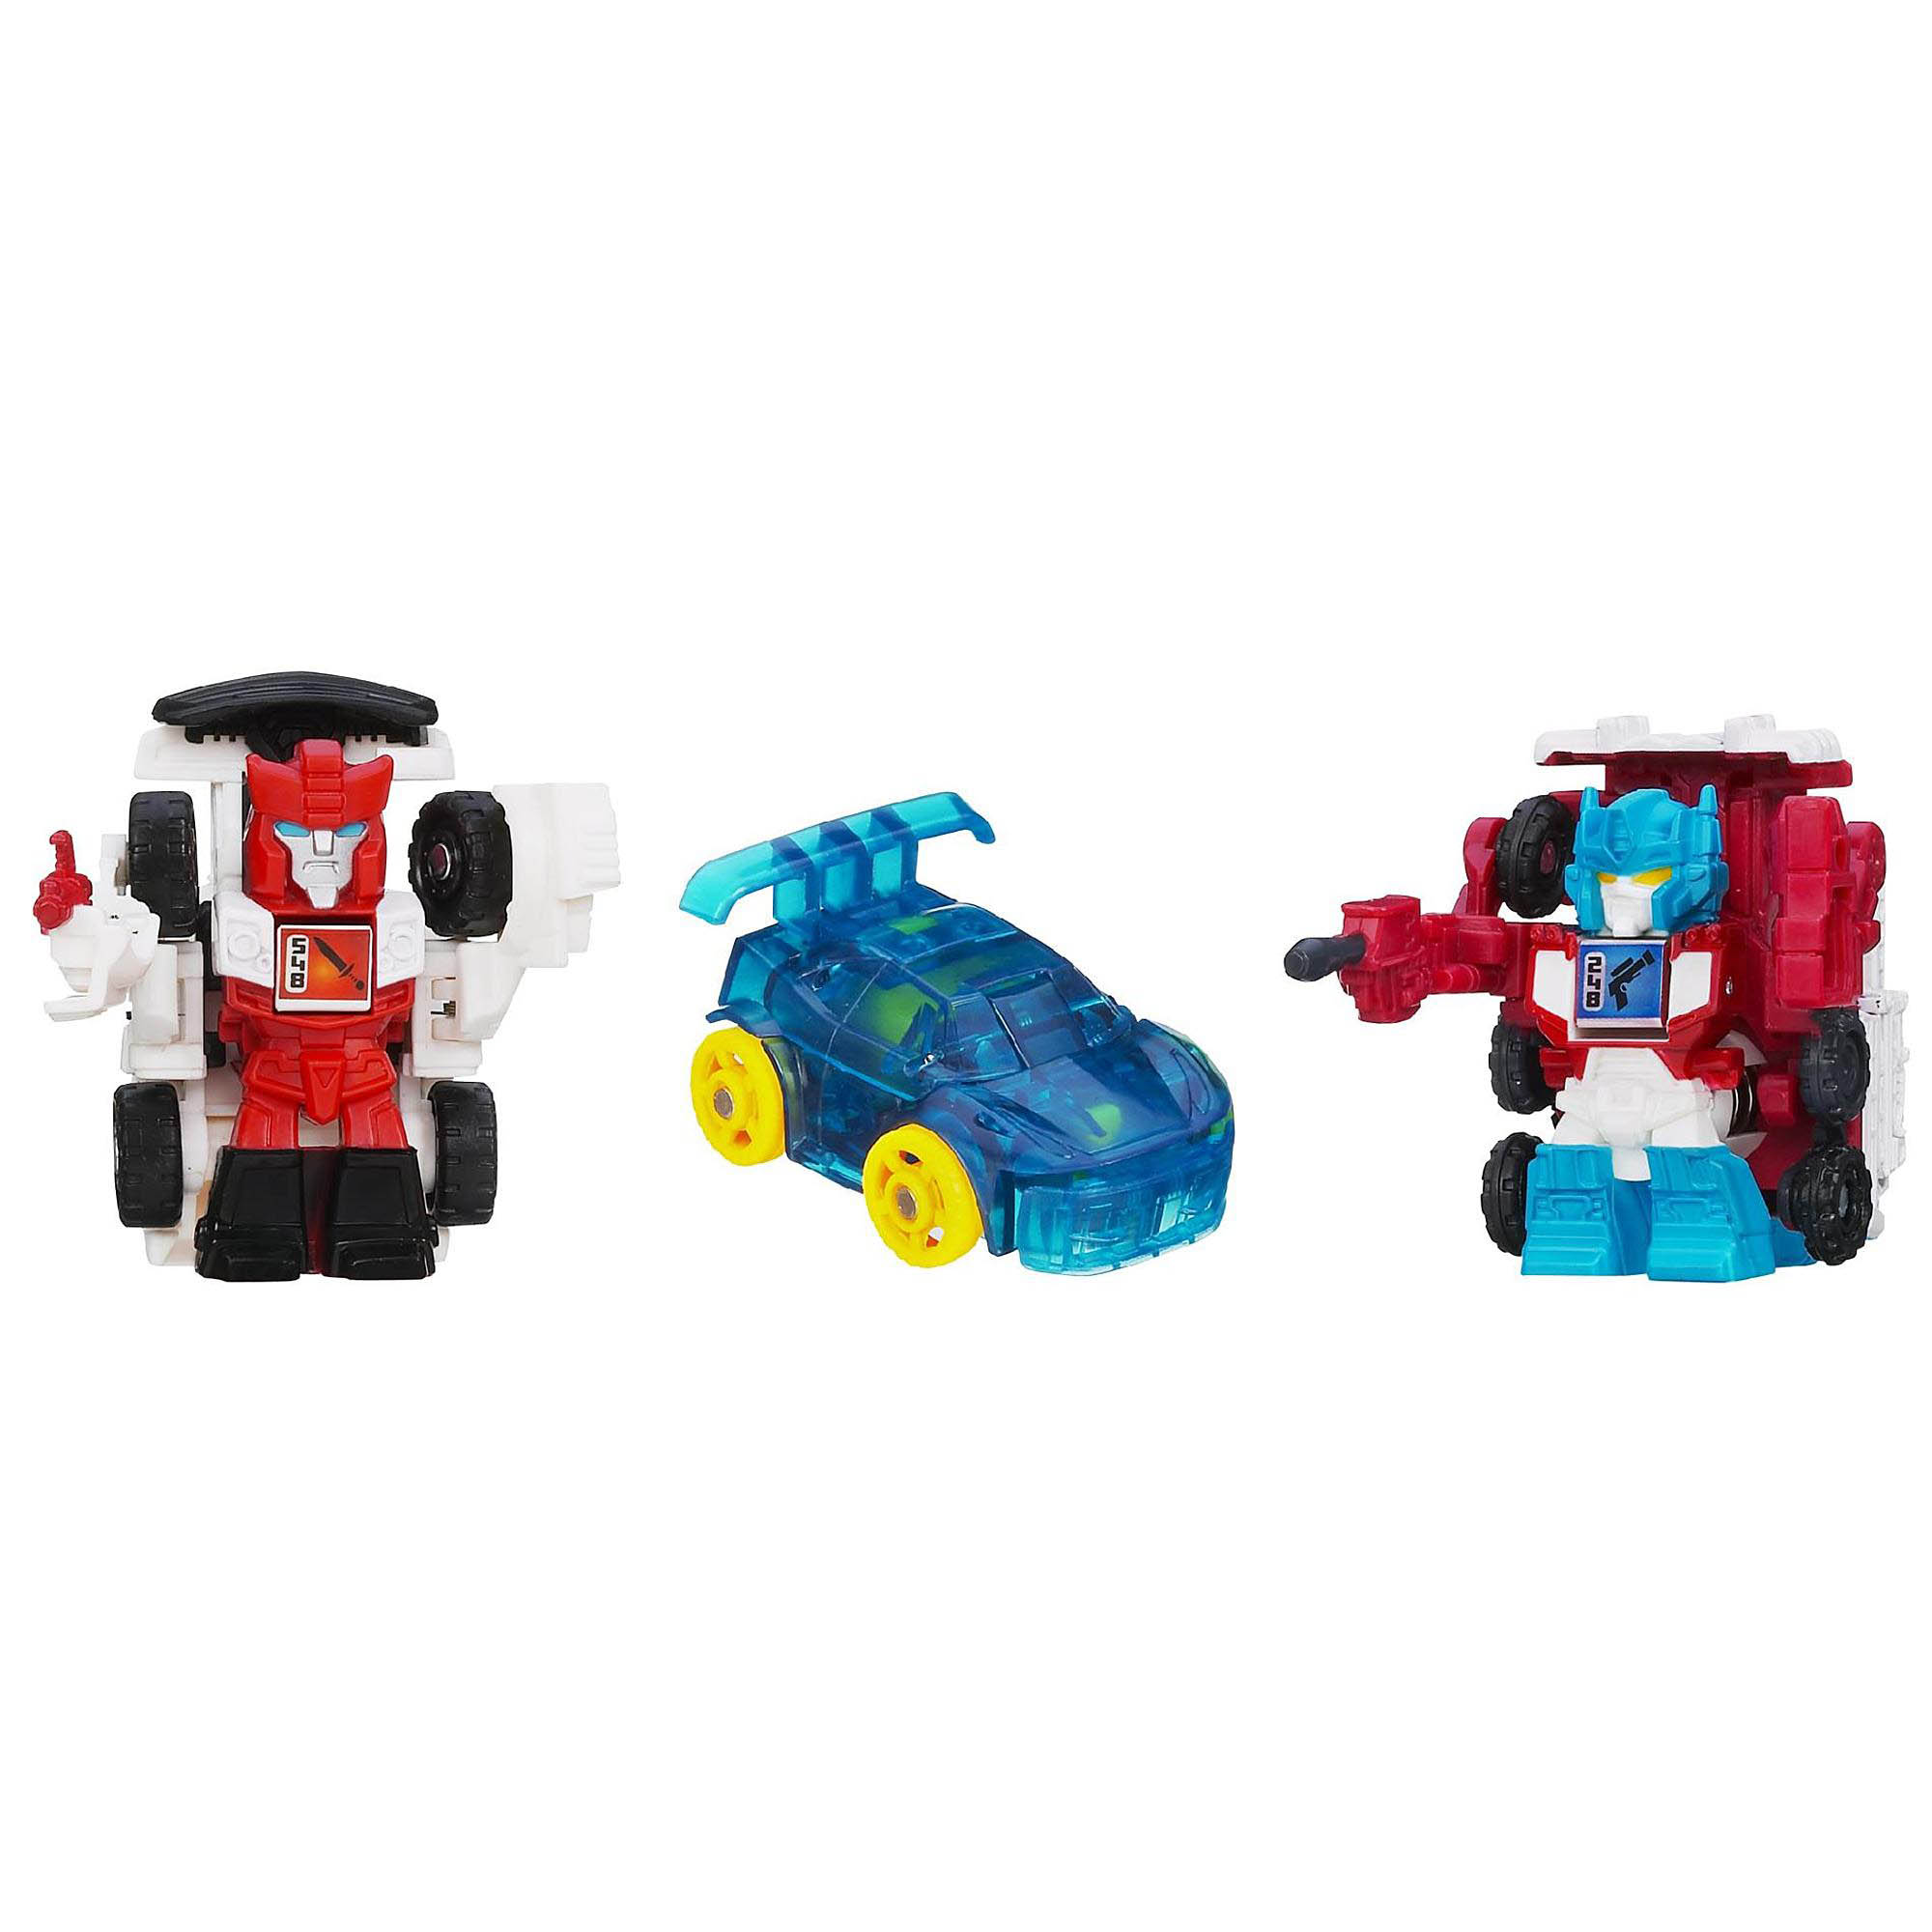 Bộ 3 đồ chơi Robot Transformer Mini Bot Shots - Red Alert, Ultra Magnus và Mirage (Box)